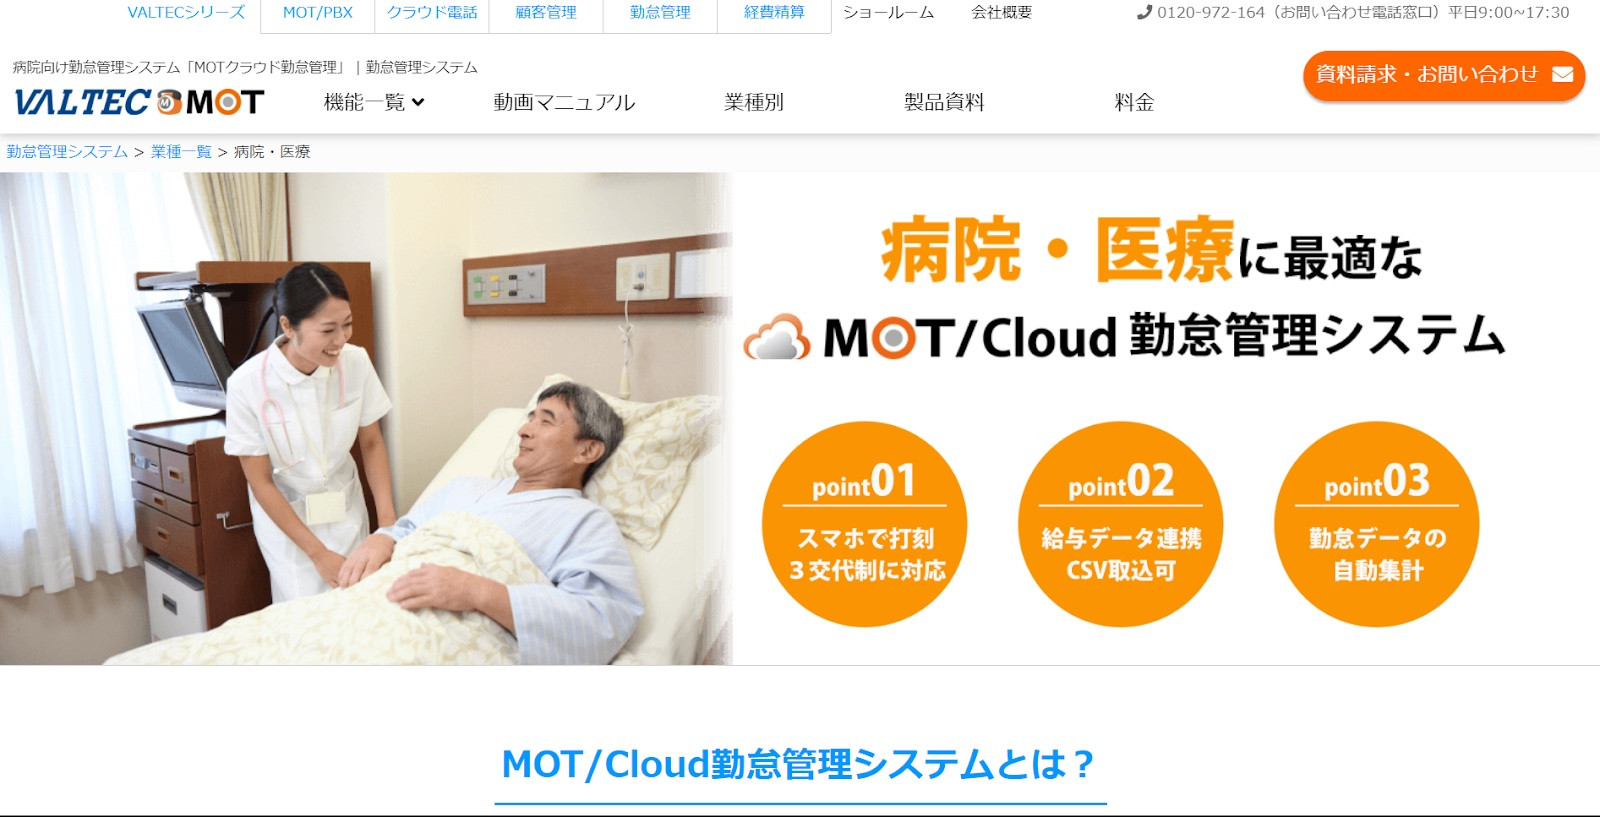 MOT/Cloud勤怠管理システム